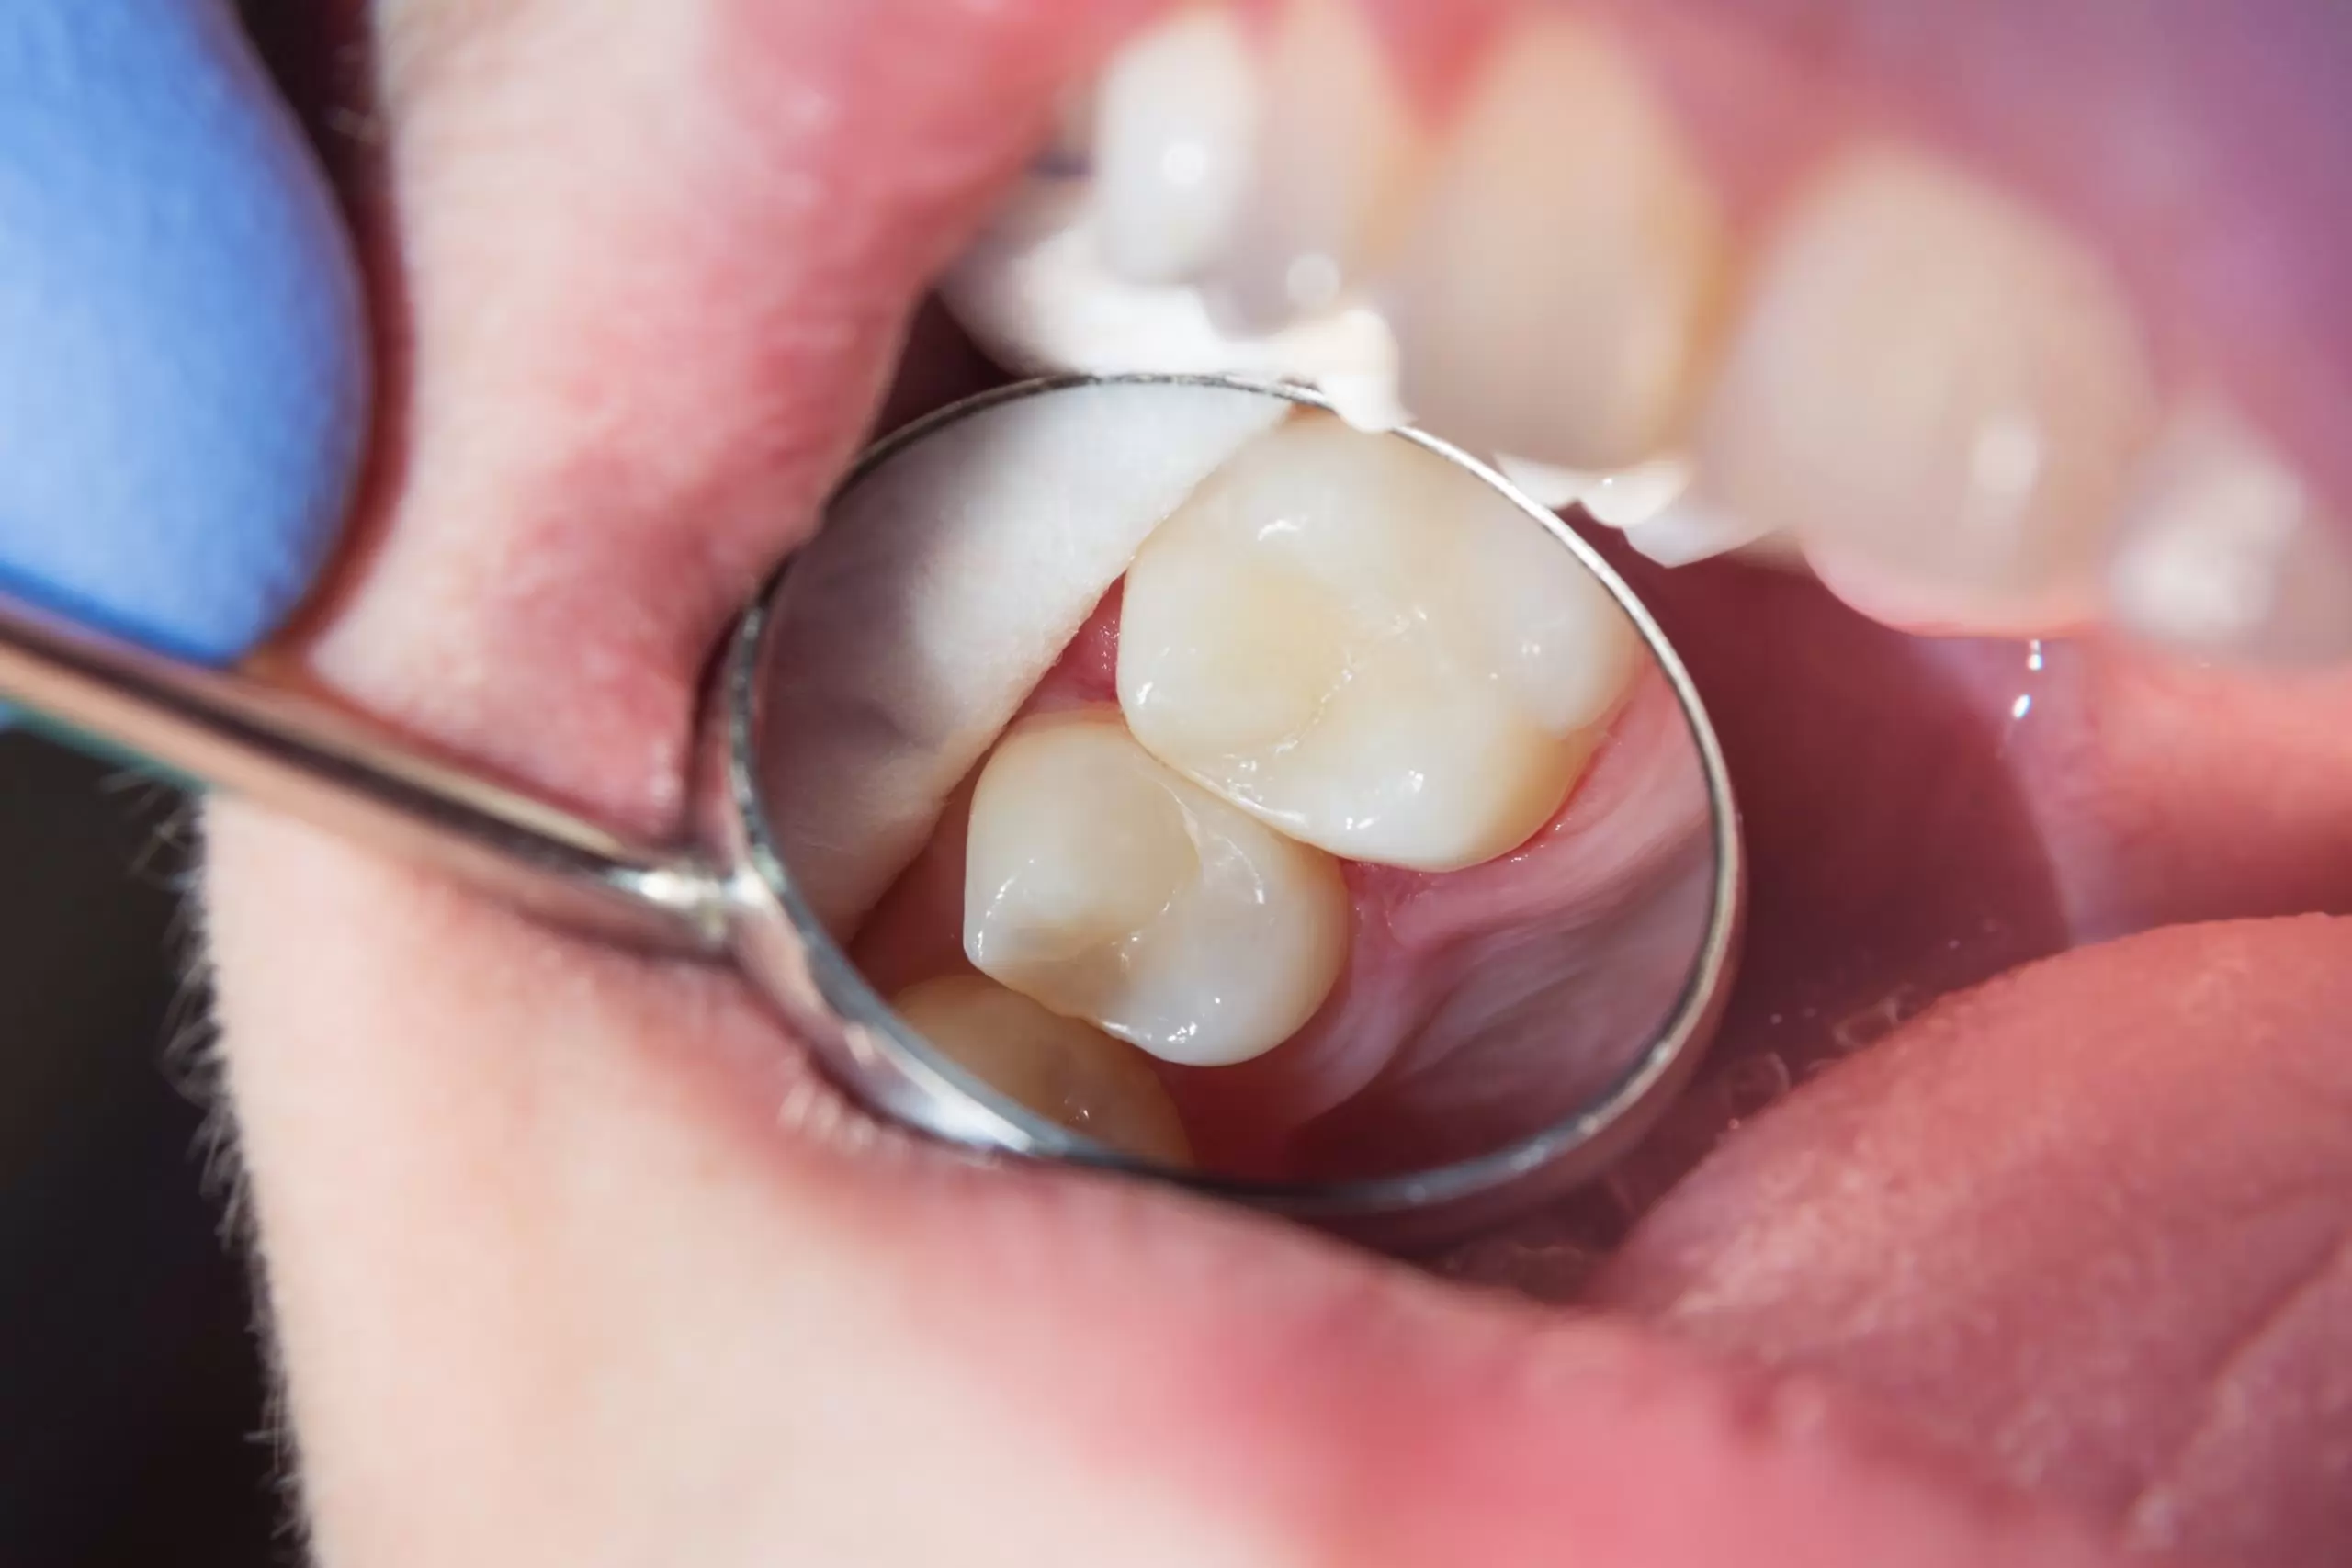 Diş Dolgusu Nasıl Yapılır?